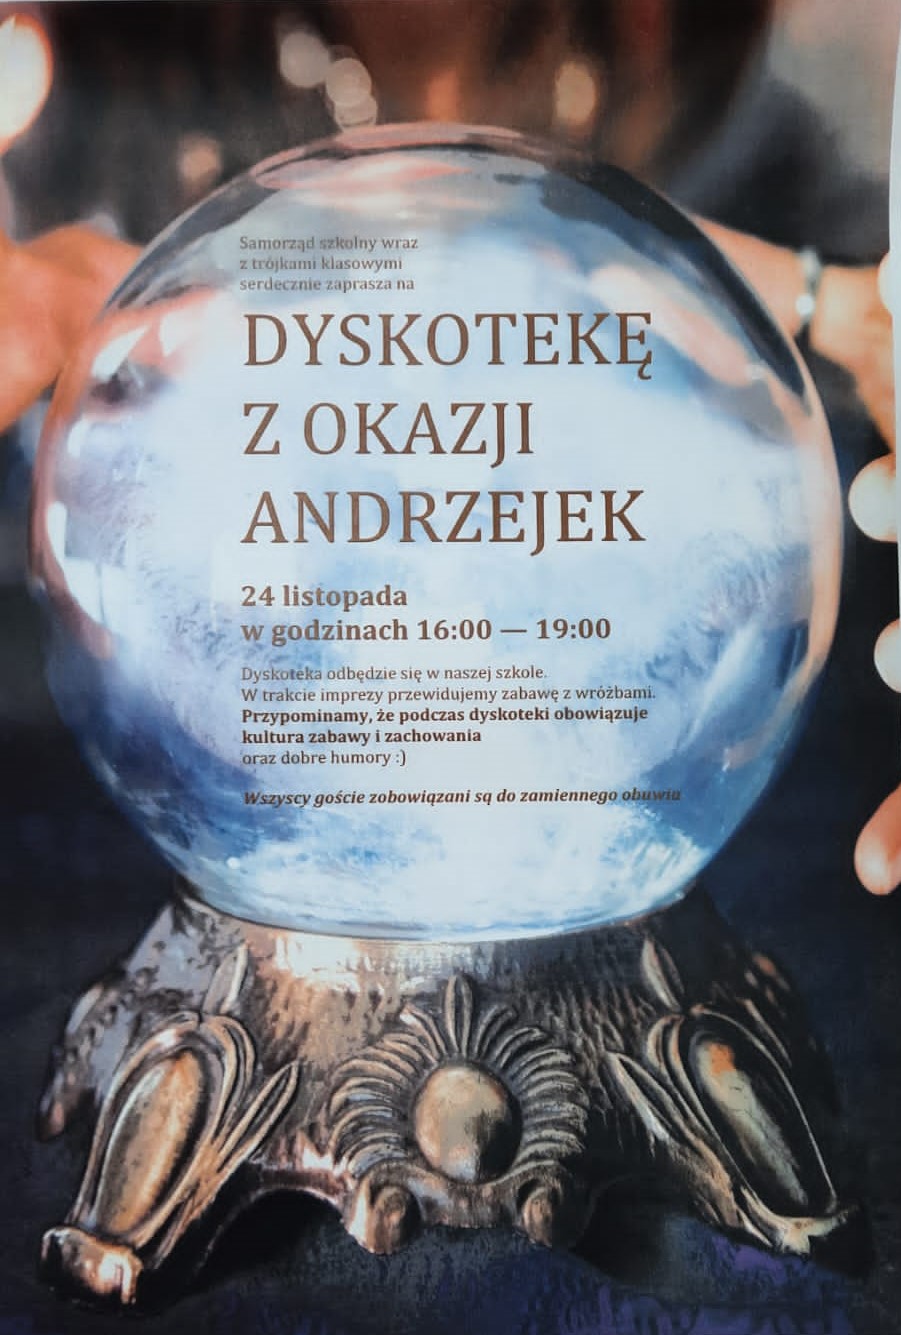 Plakat informujący o dyskotece z okazji Andrzejek